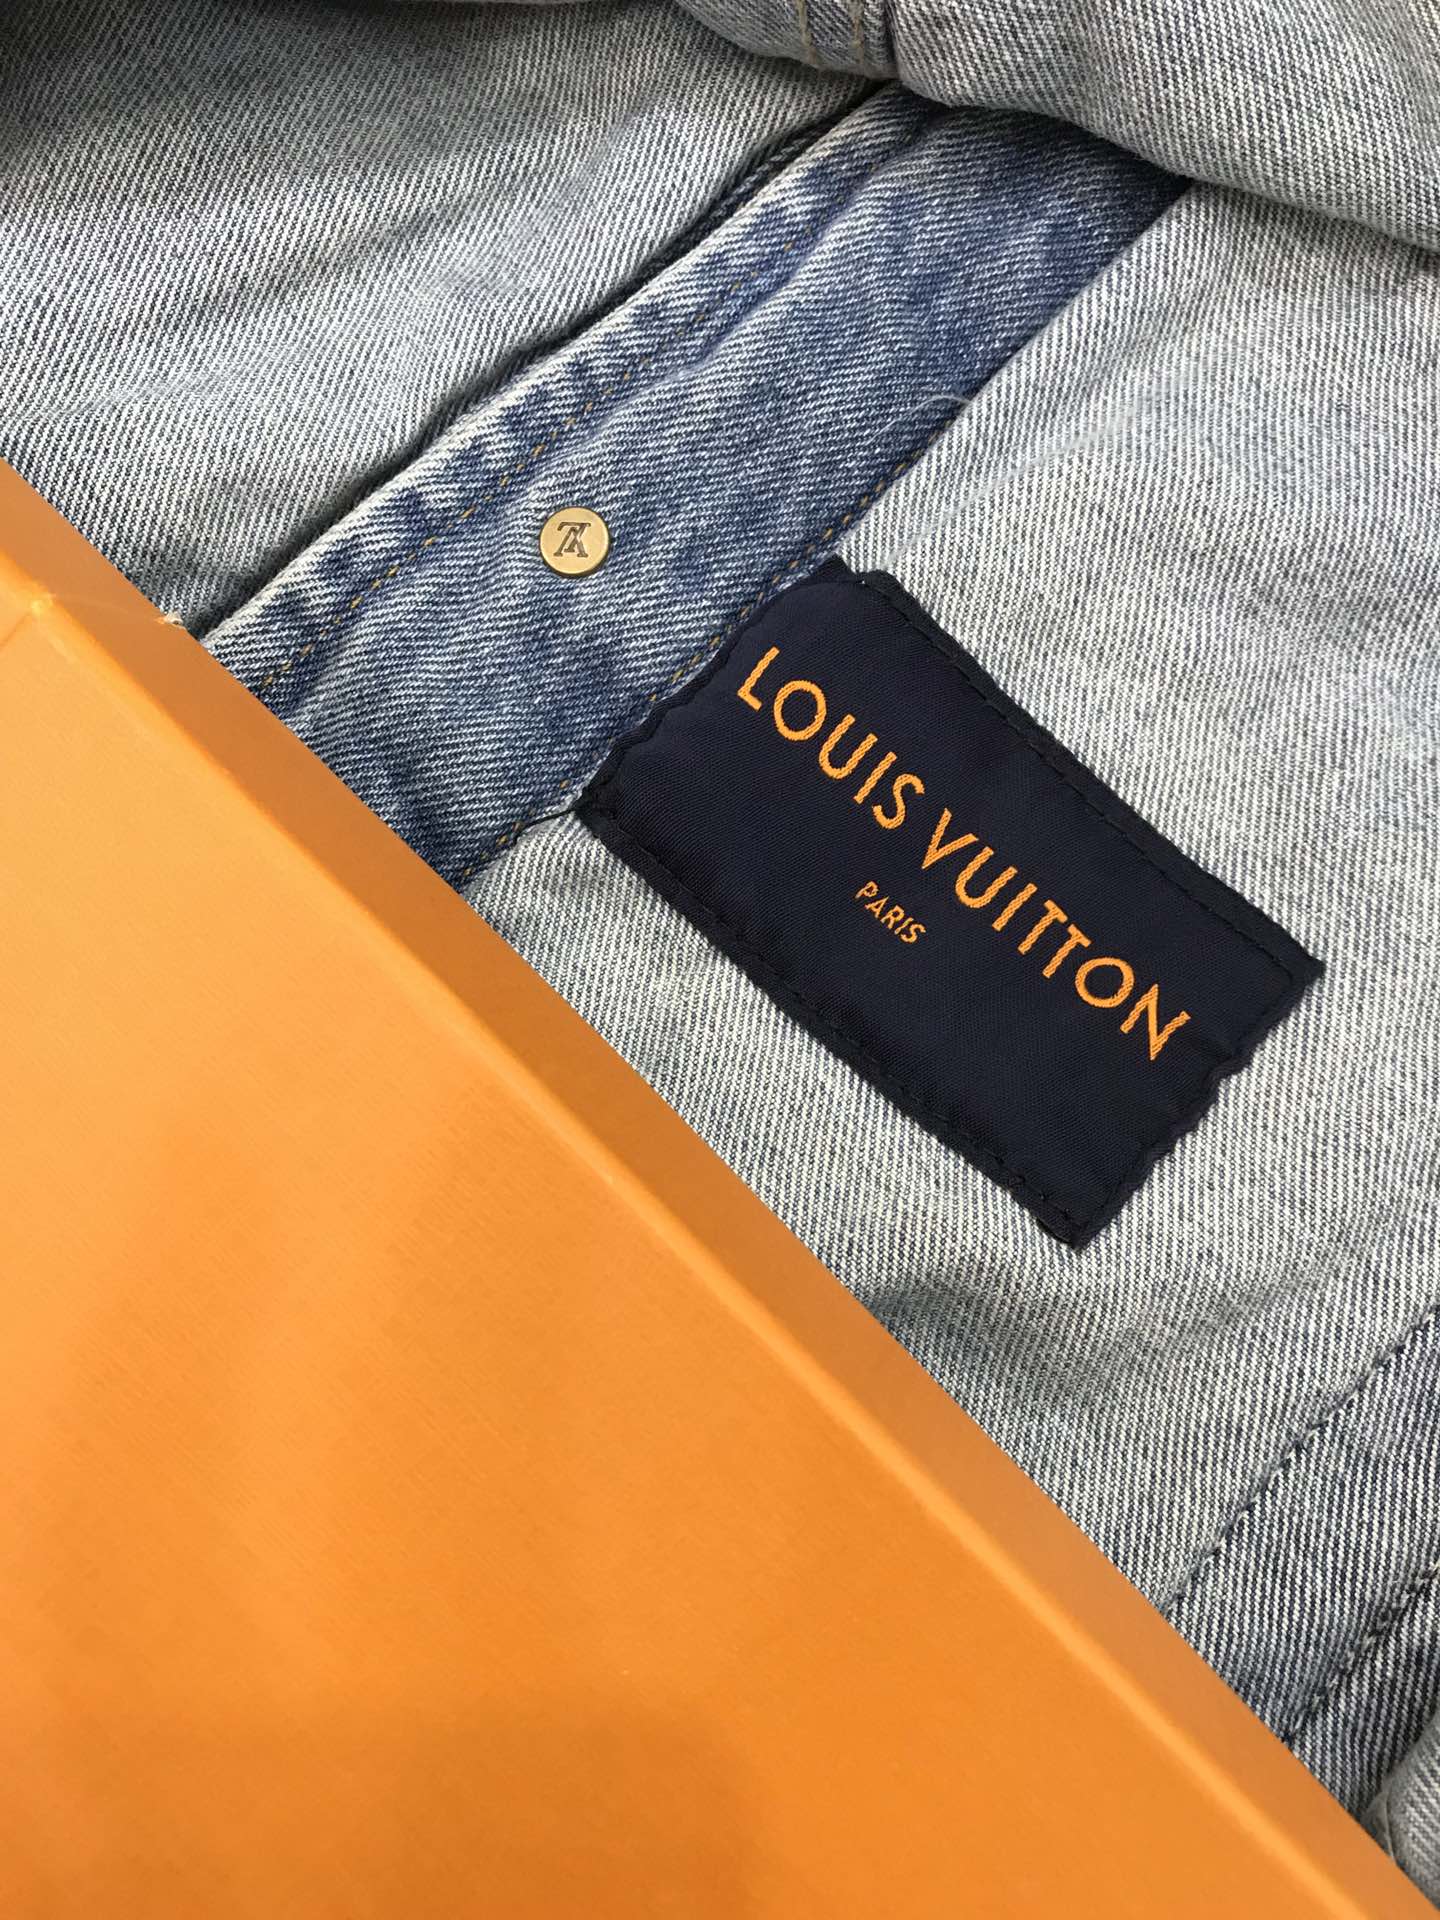 Louis Vuitton Jacket Virgil Abloh